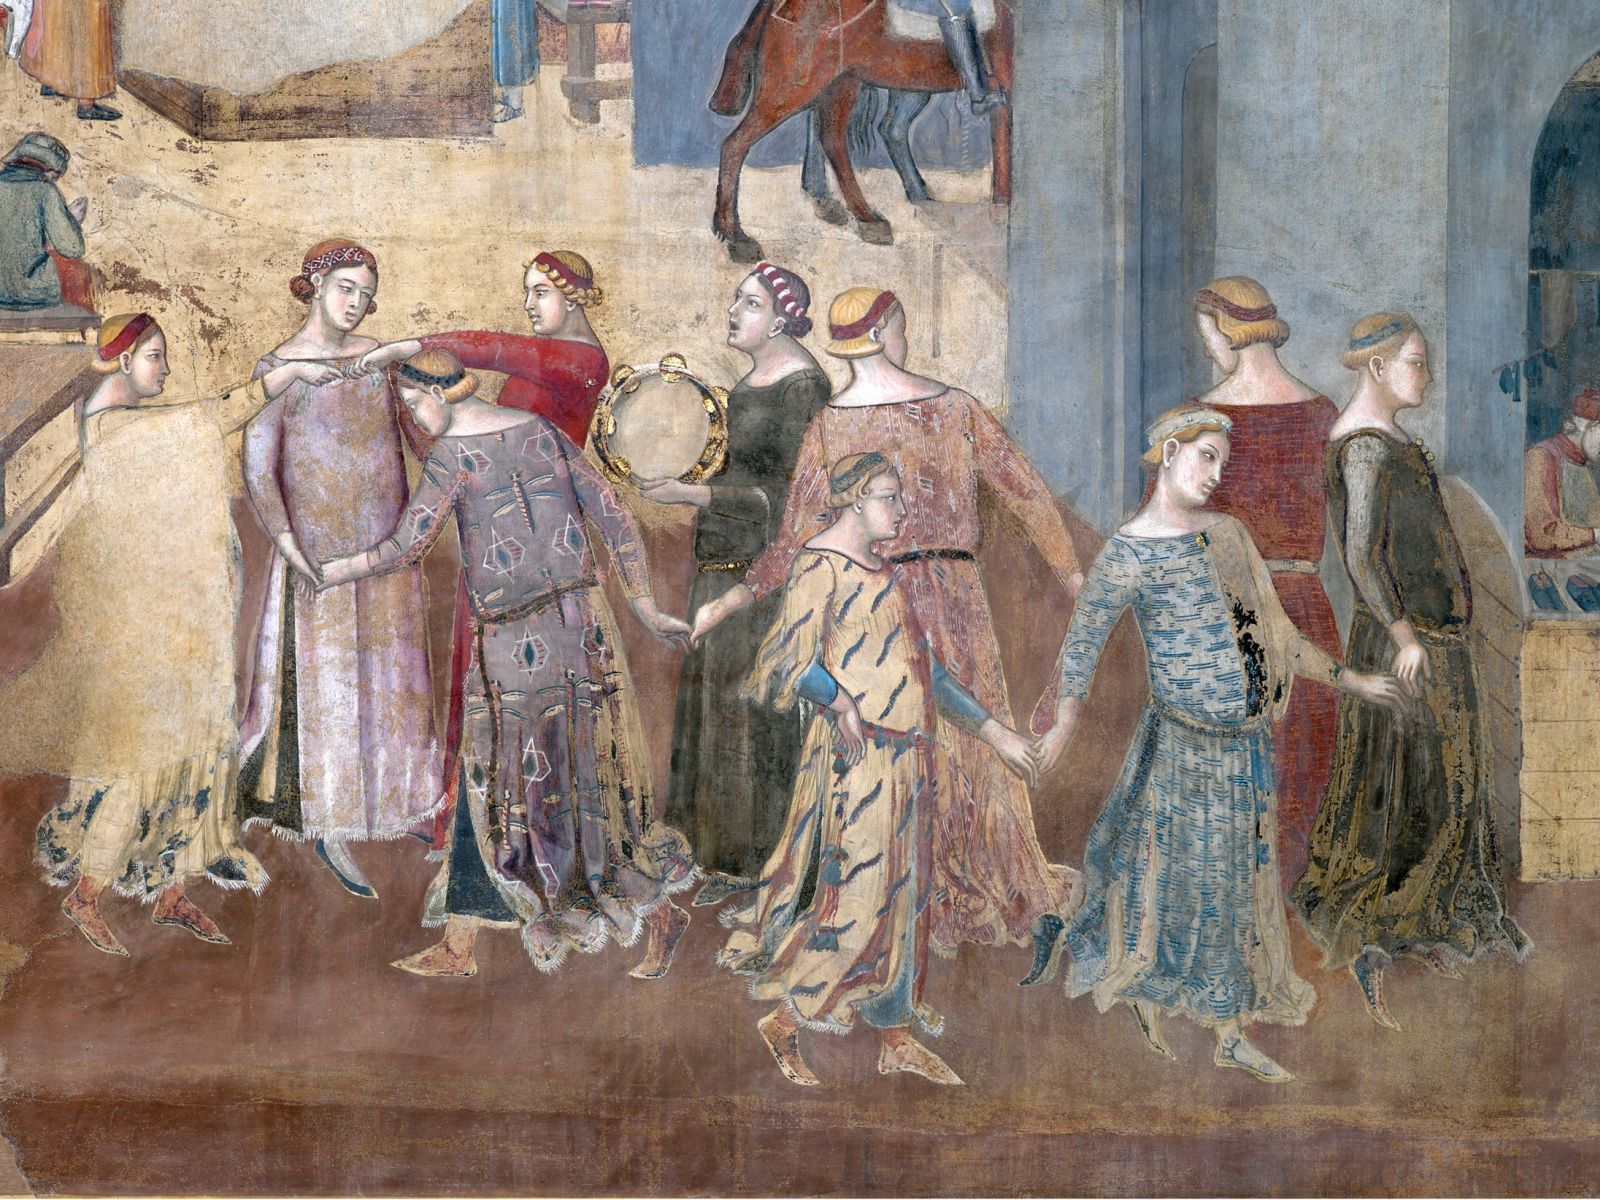 Un dettaglio del Buon Governo di Lorenzetti